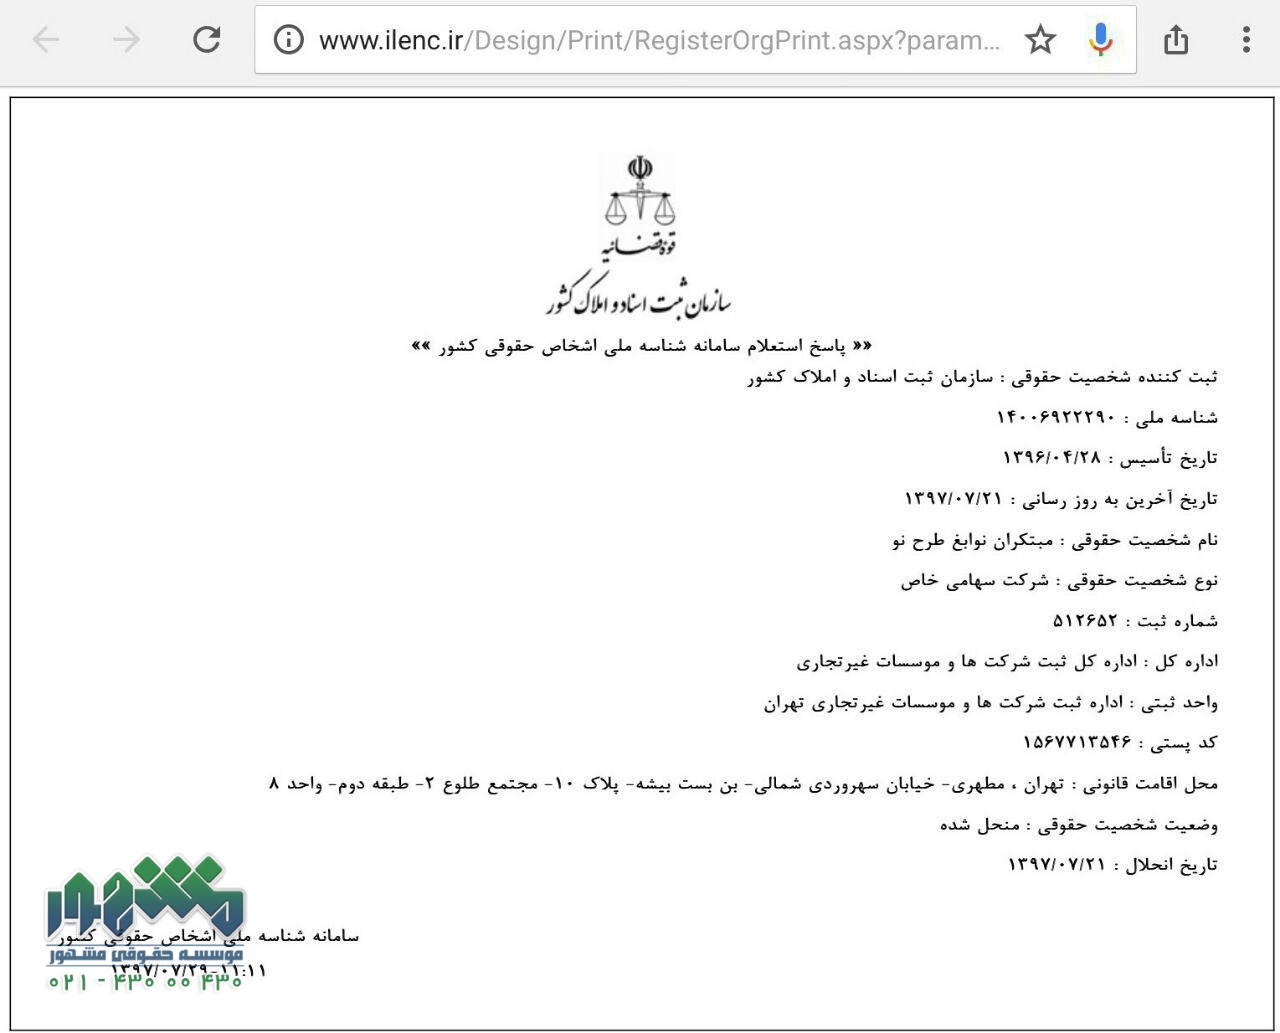 اداره ثبت شرکتها تهران شناسه ملی
